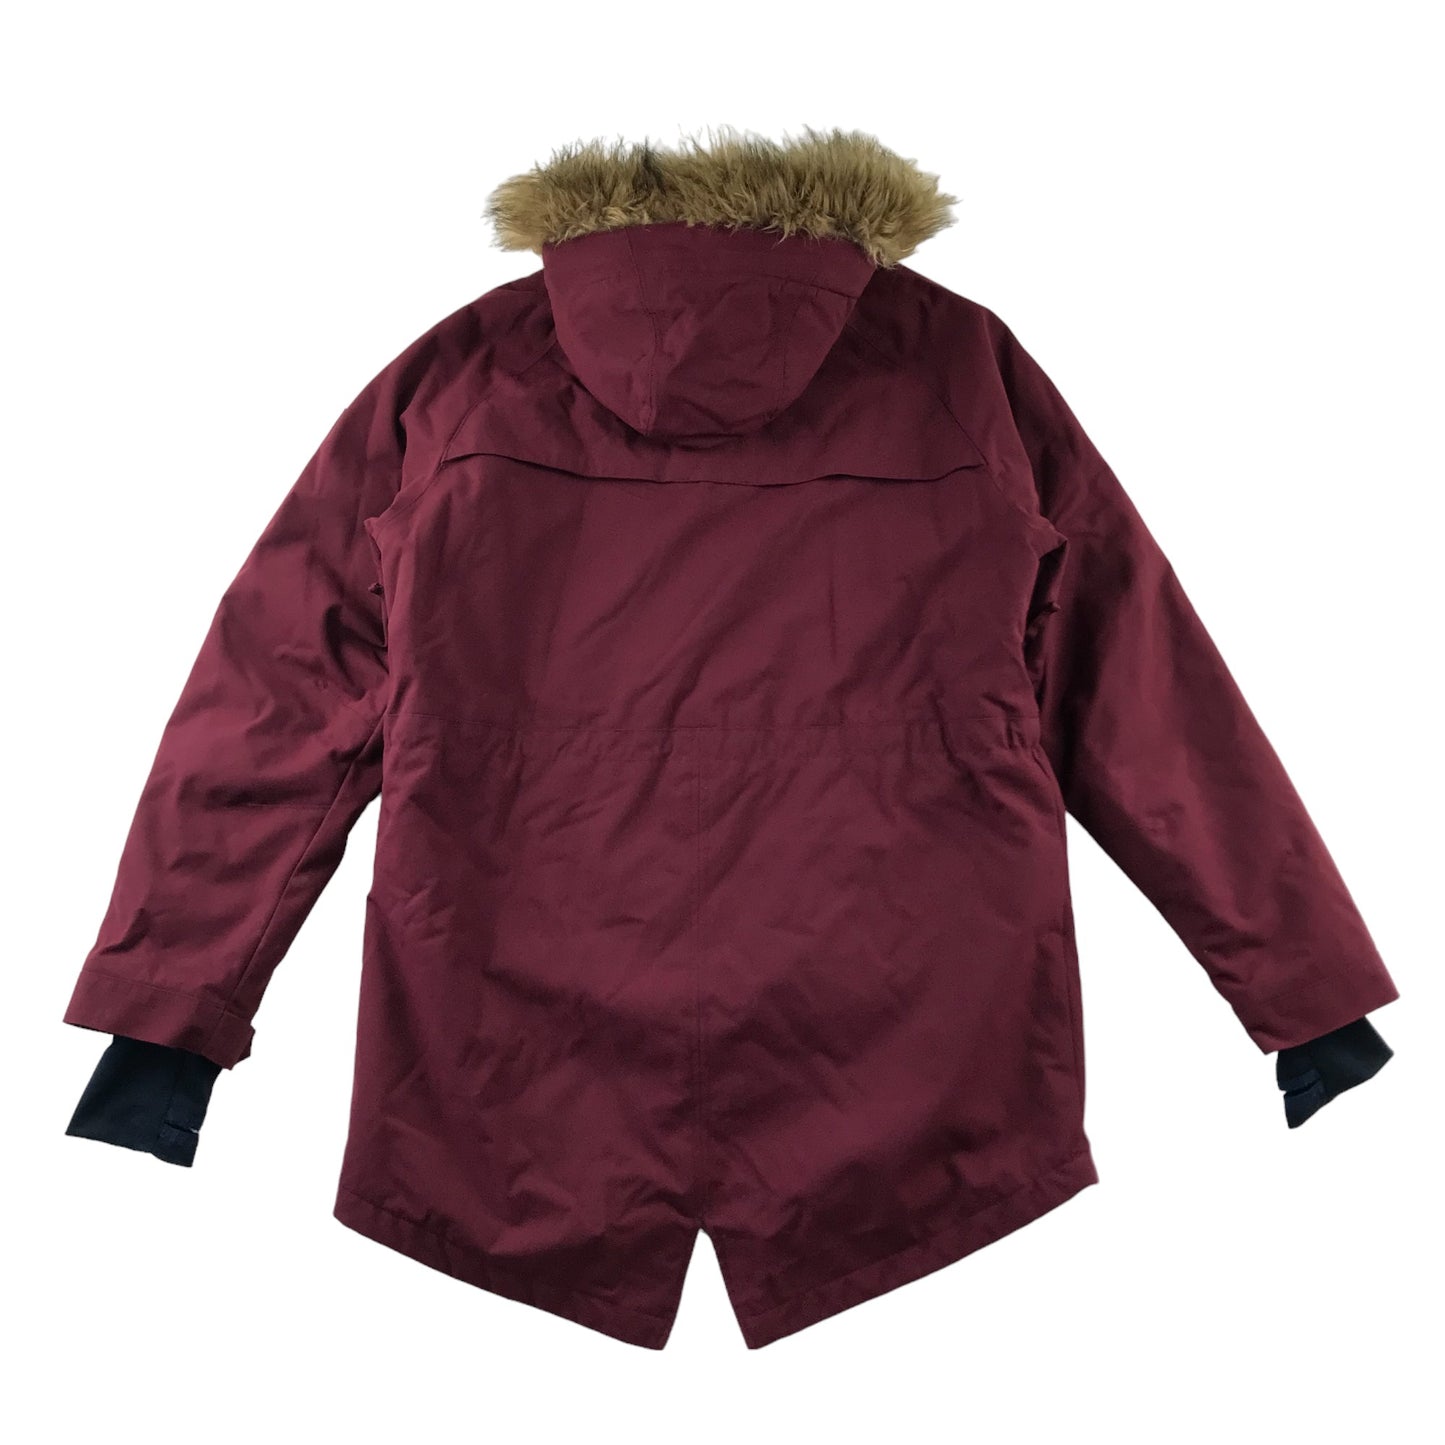 Westbeach Kasba Parka Womens Size M Burgundy Snow Jacket